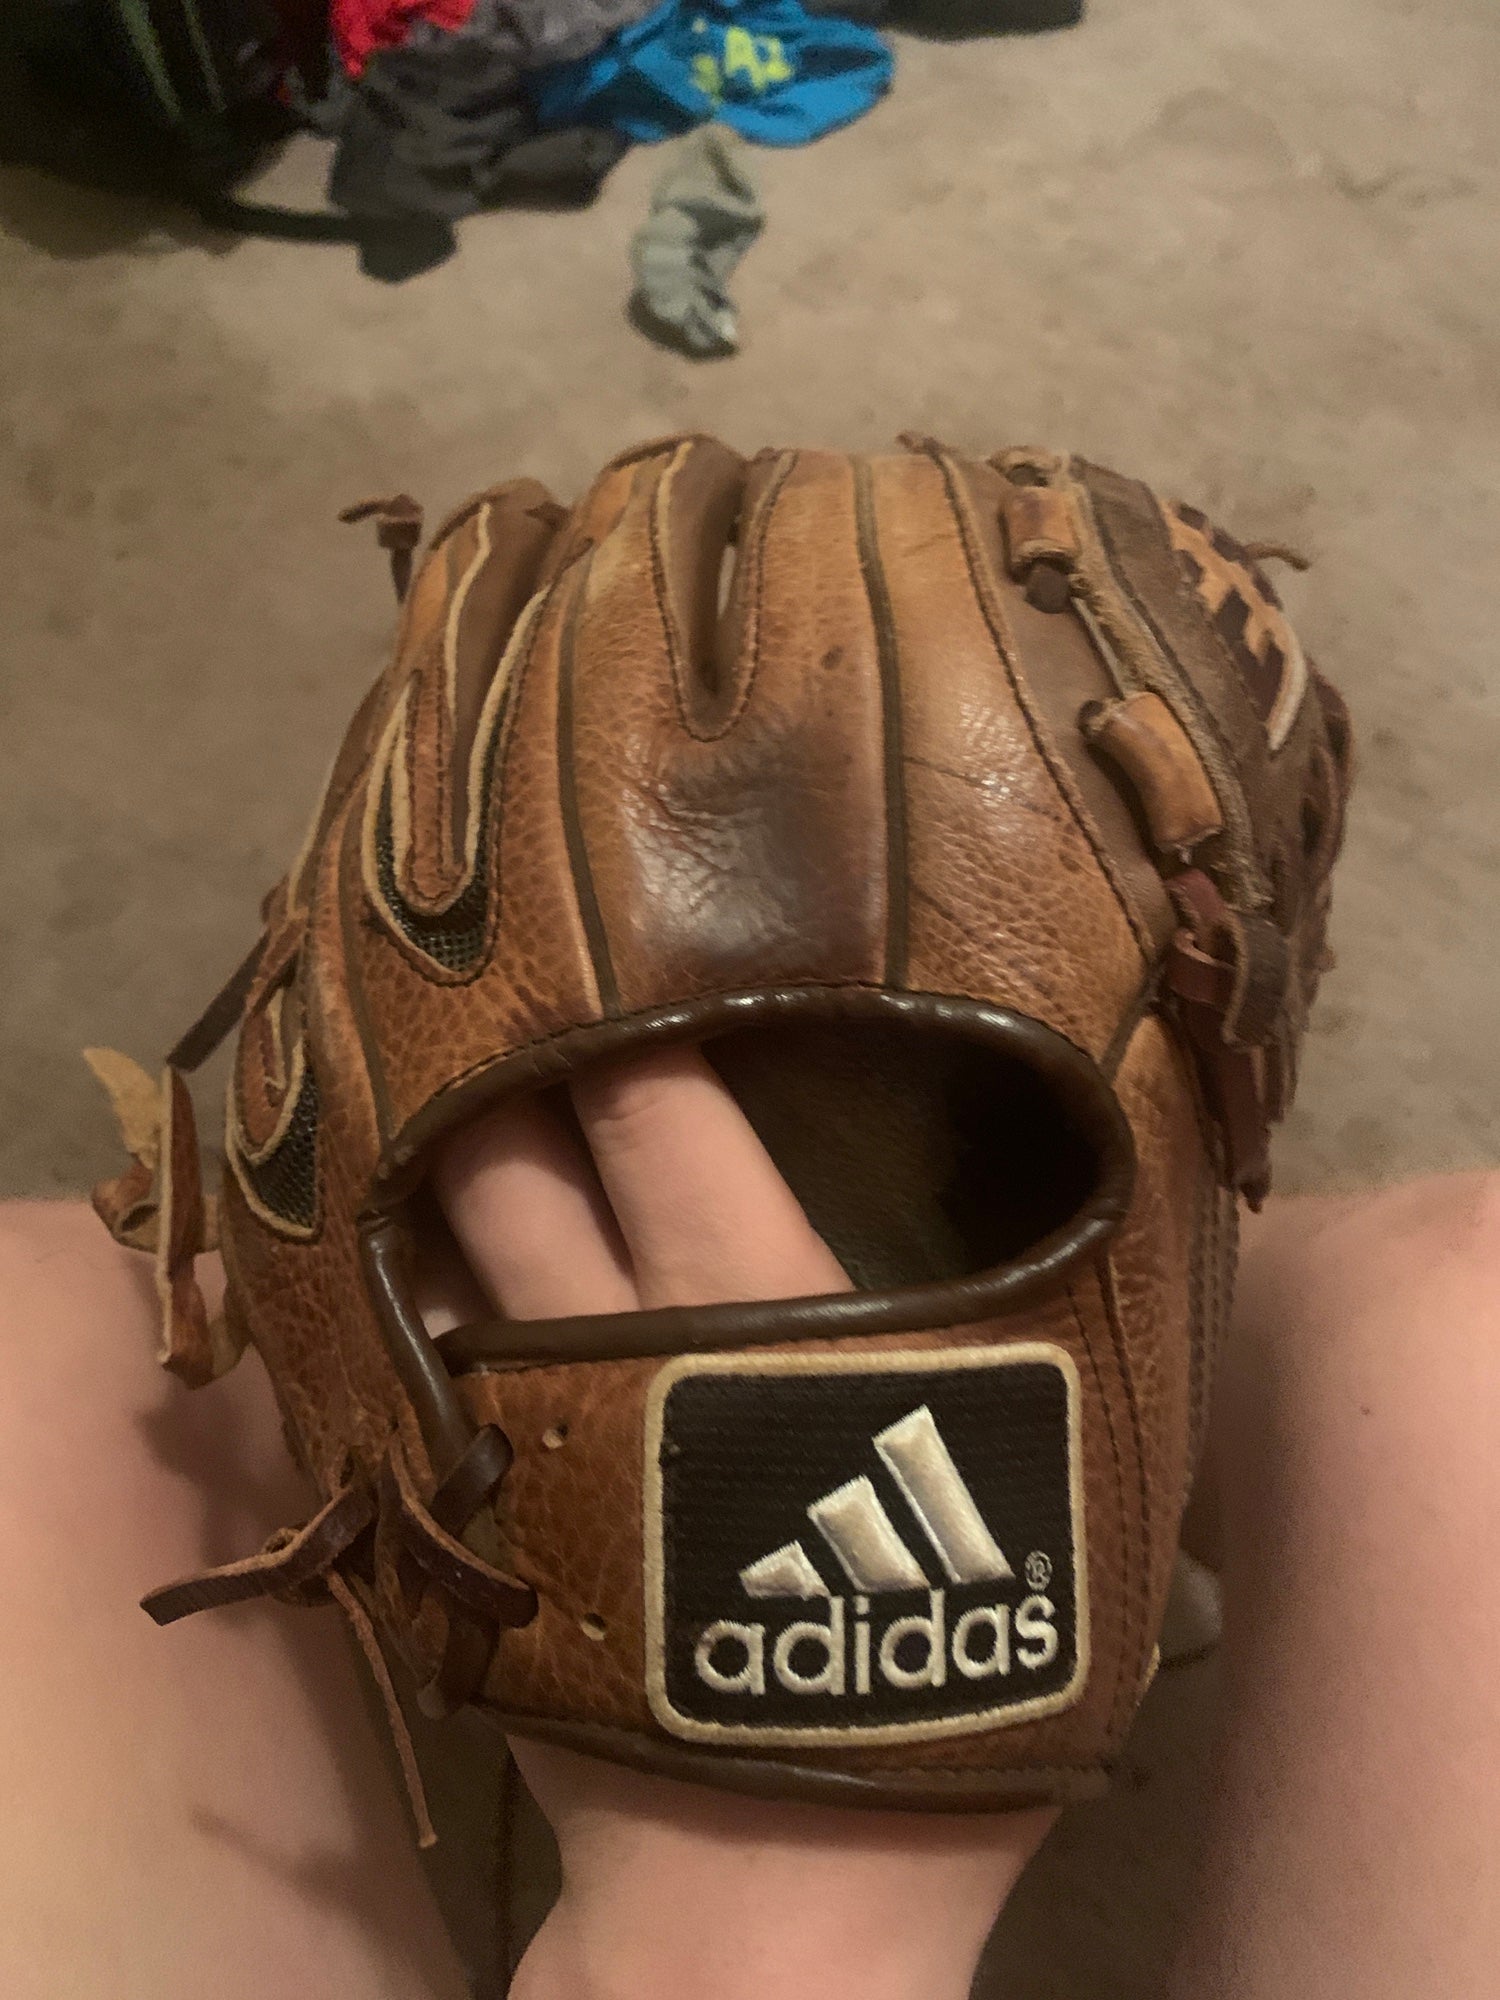 Adidas baseball Glove  Adidas baseball, Baseball glove, Adidas